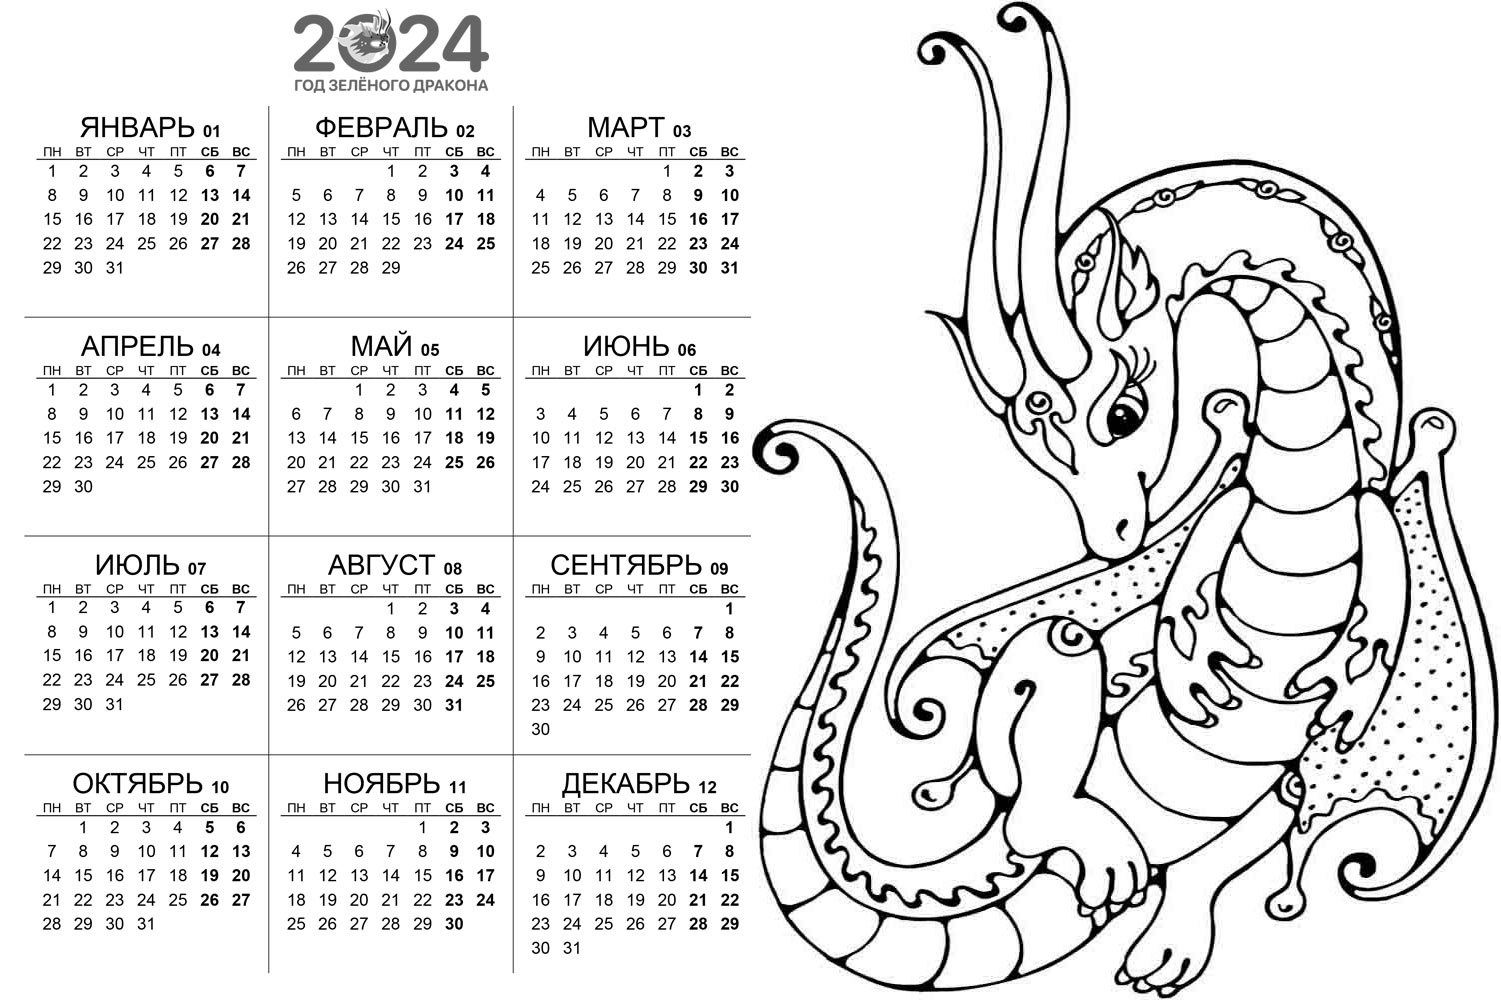 Календарь года Изображения – скачать бесплатно на Freepik